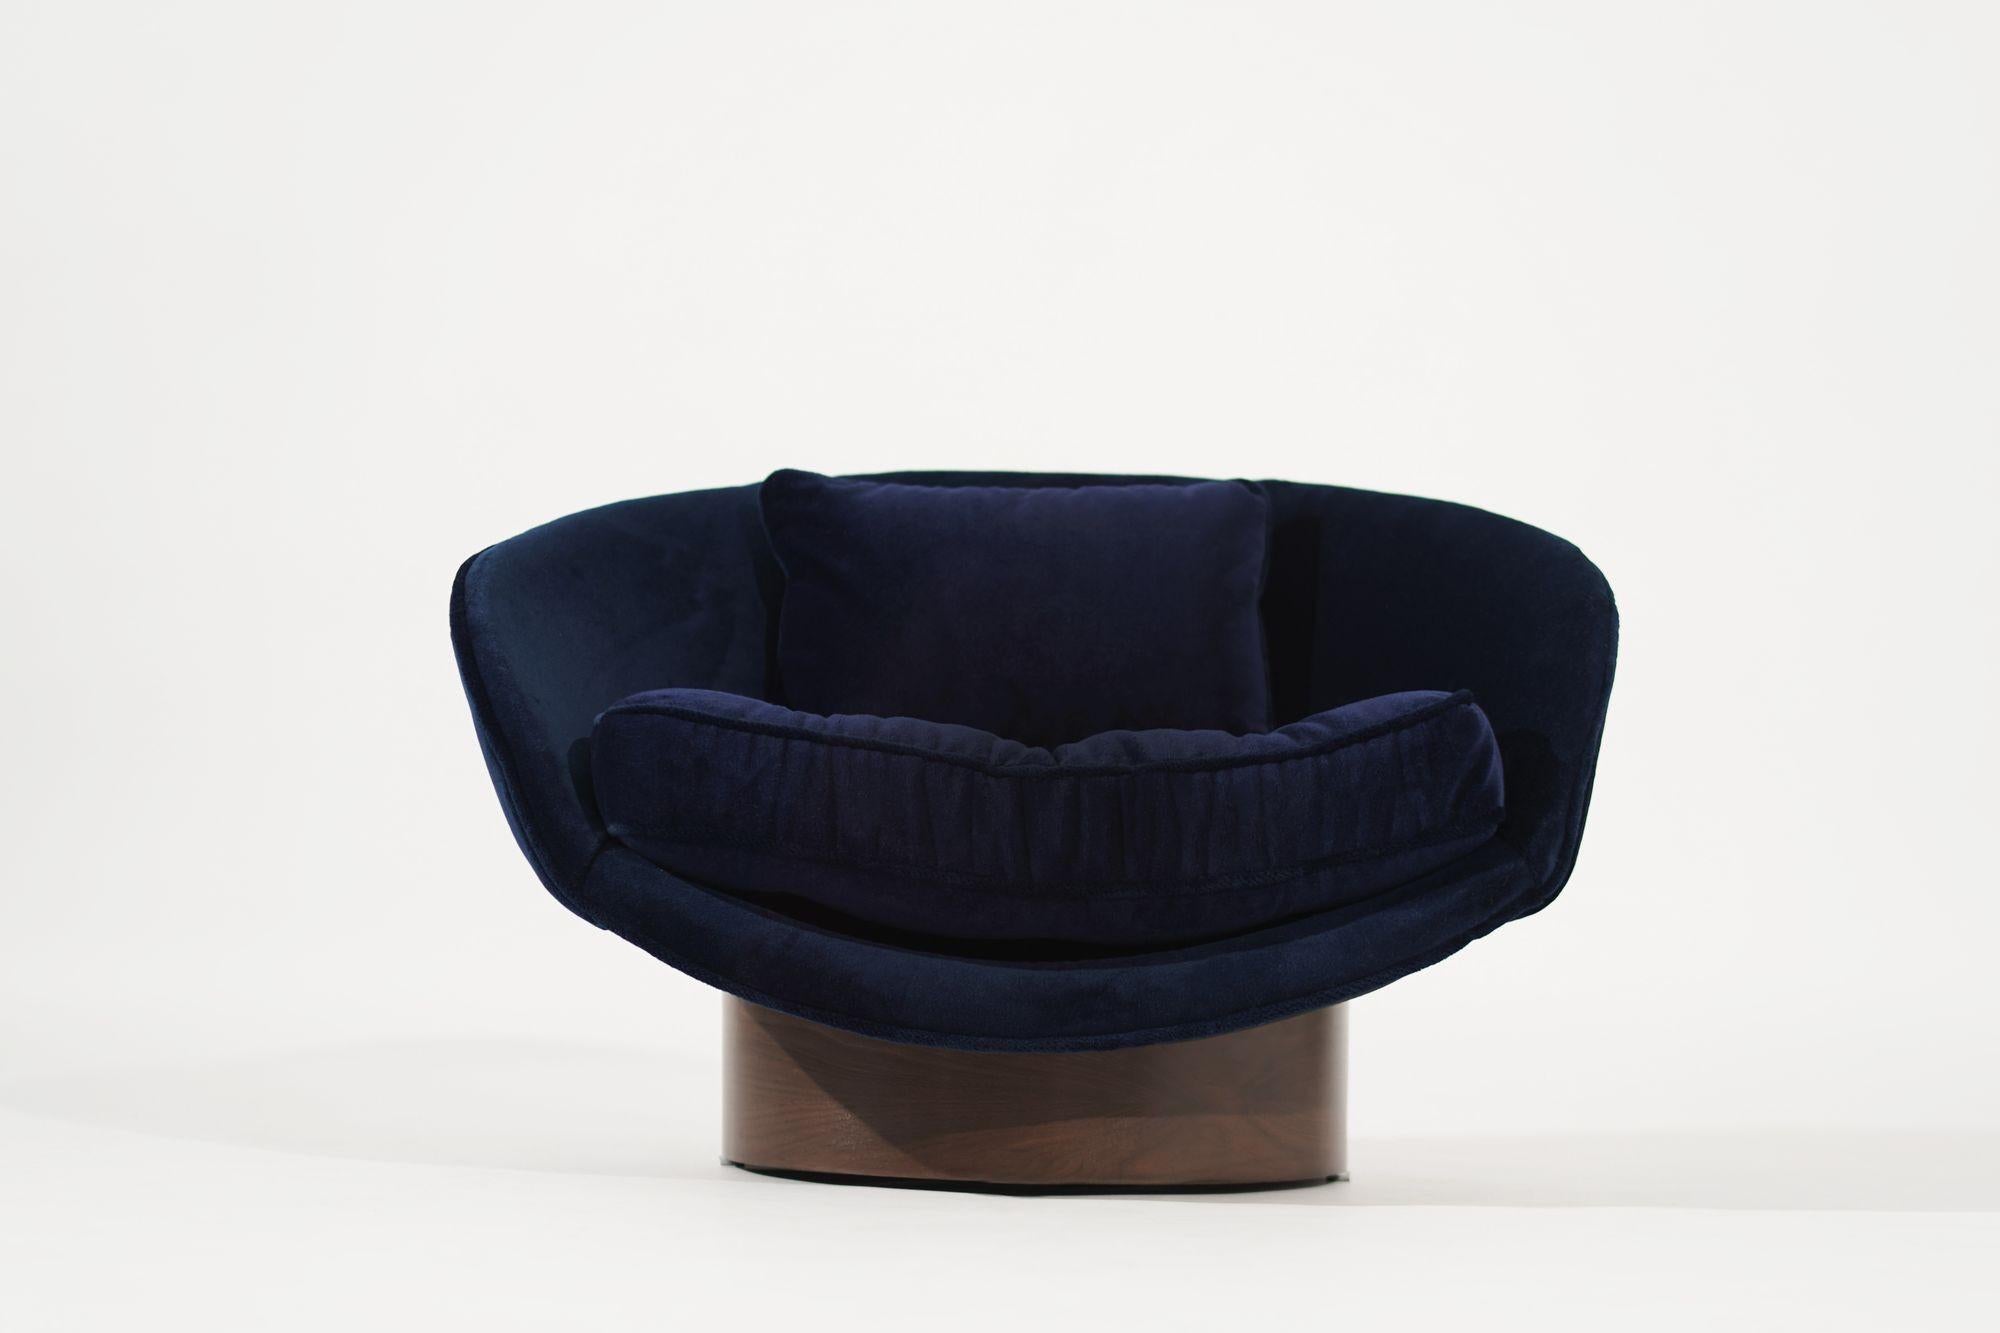 Ein sorgfältig restaurierter Niedrigprofil-Stuhl von Adrian Pearsall. Dieser Sessel, der in seiner ursprünglichen Pracht wiederhergestellt wurde, verfügt über einen makellosen marineblauen Alpakasamtbezug, der sowohl Vintage-Allüren als auch